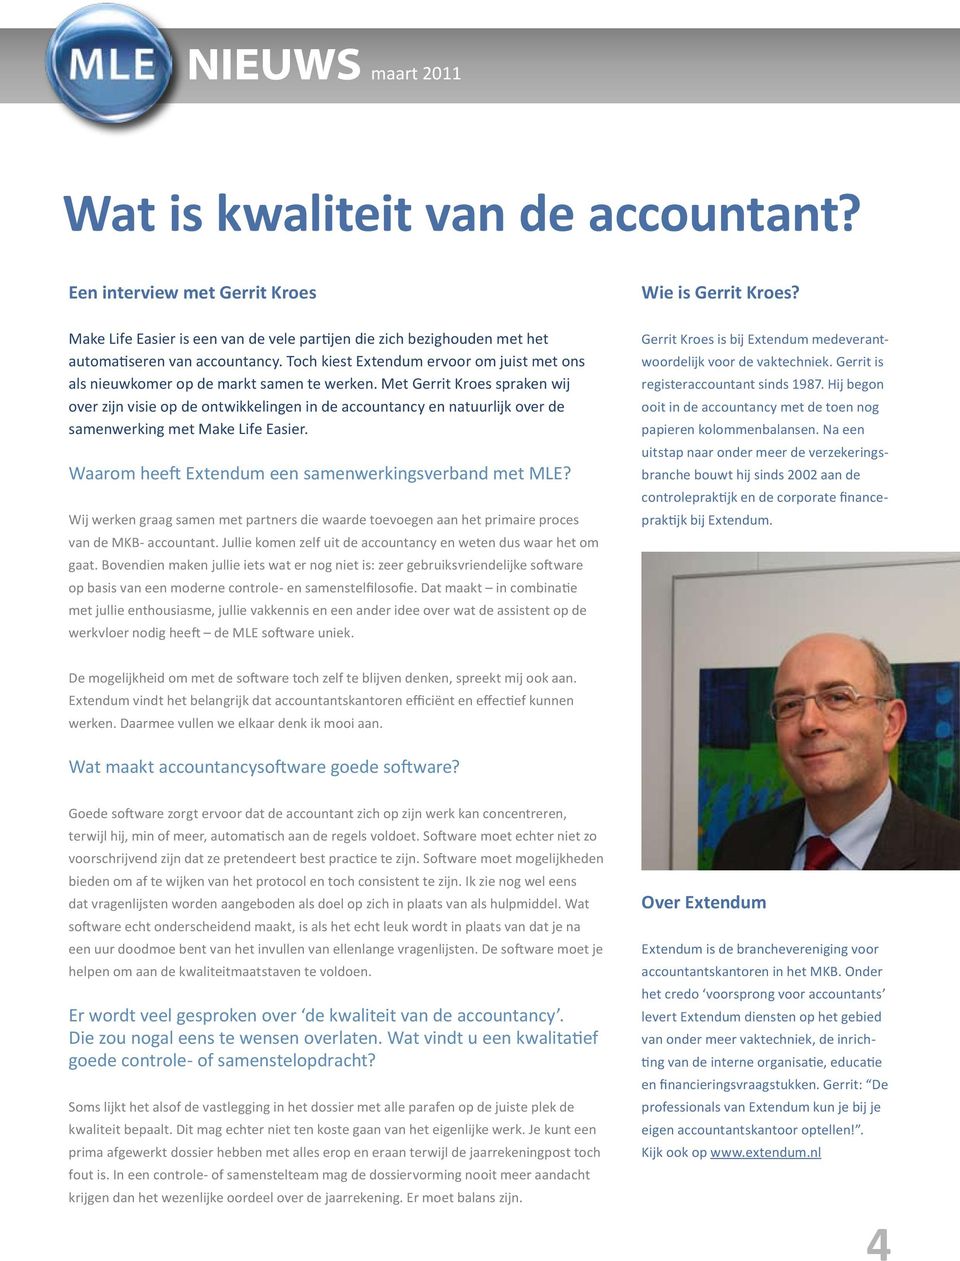 Met Gerrit Kroes spraken wij over zijn visie op de ontwikkelingen in de accountancy en natuurlijk over de samenwerking met Make Life Easier. Waarom heeft Extendum een samenwerkingsverband met MLE?